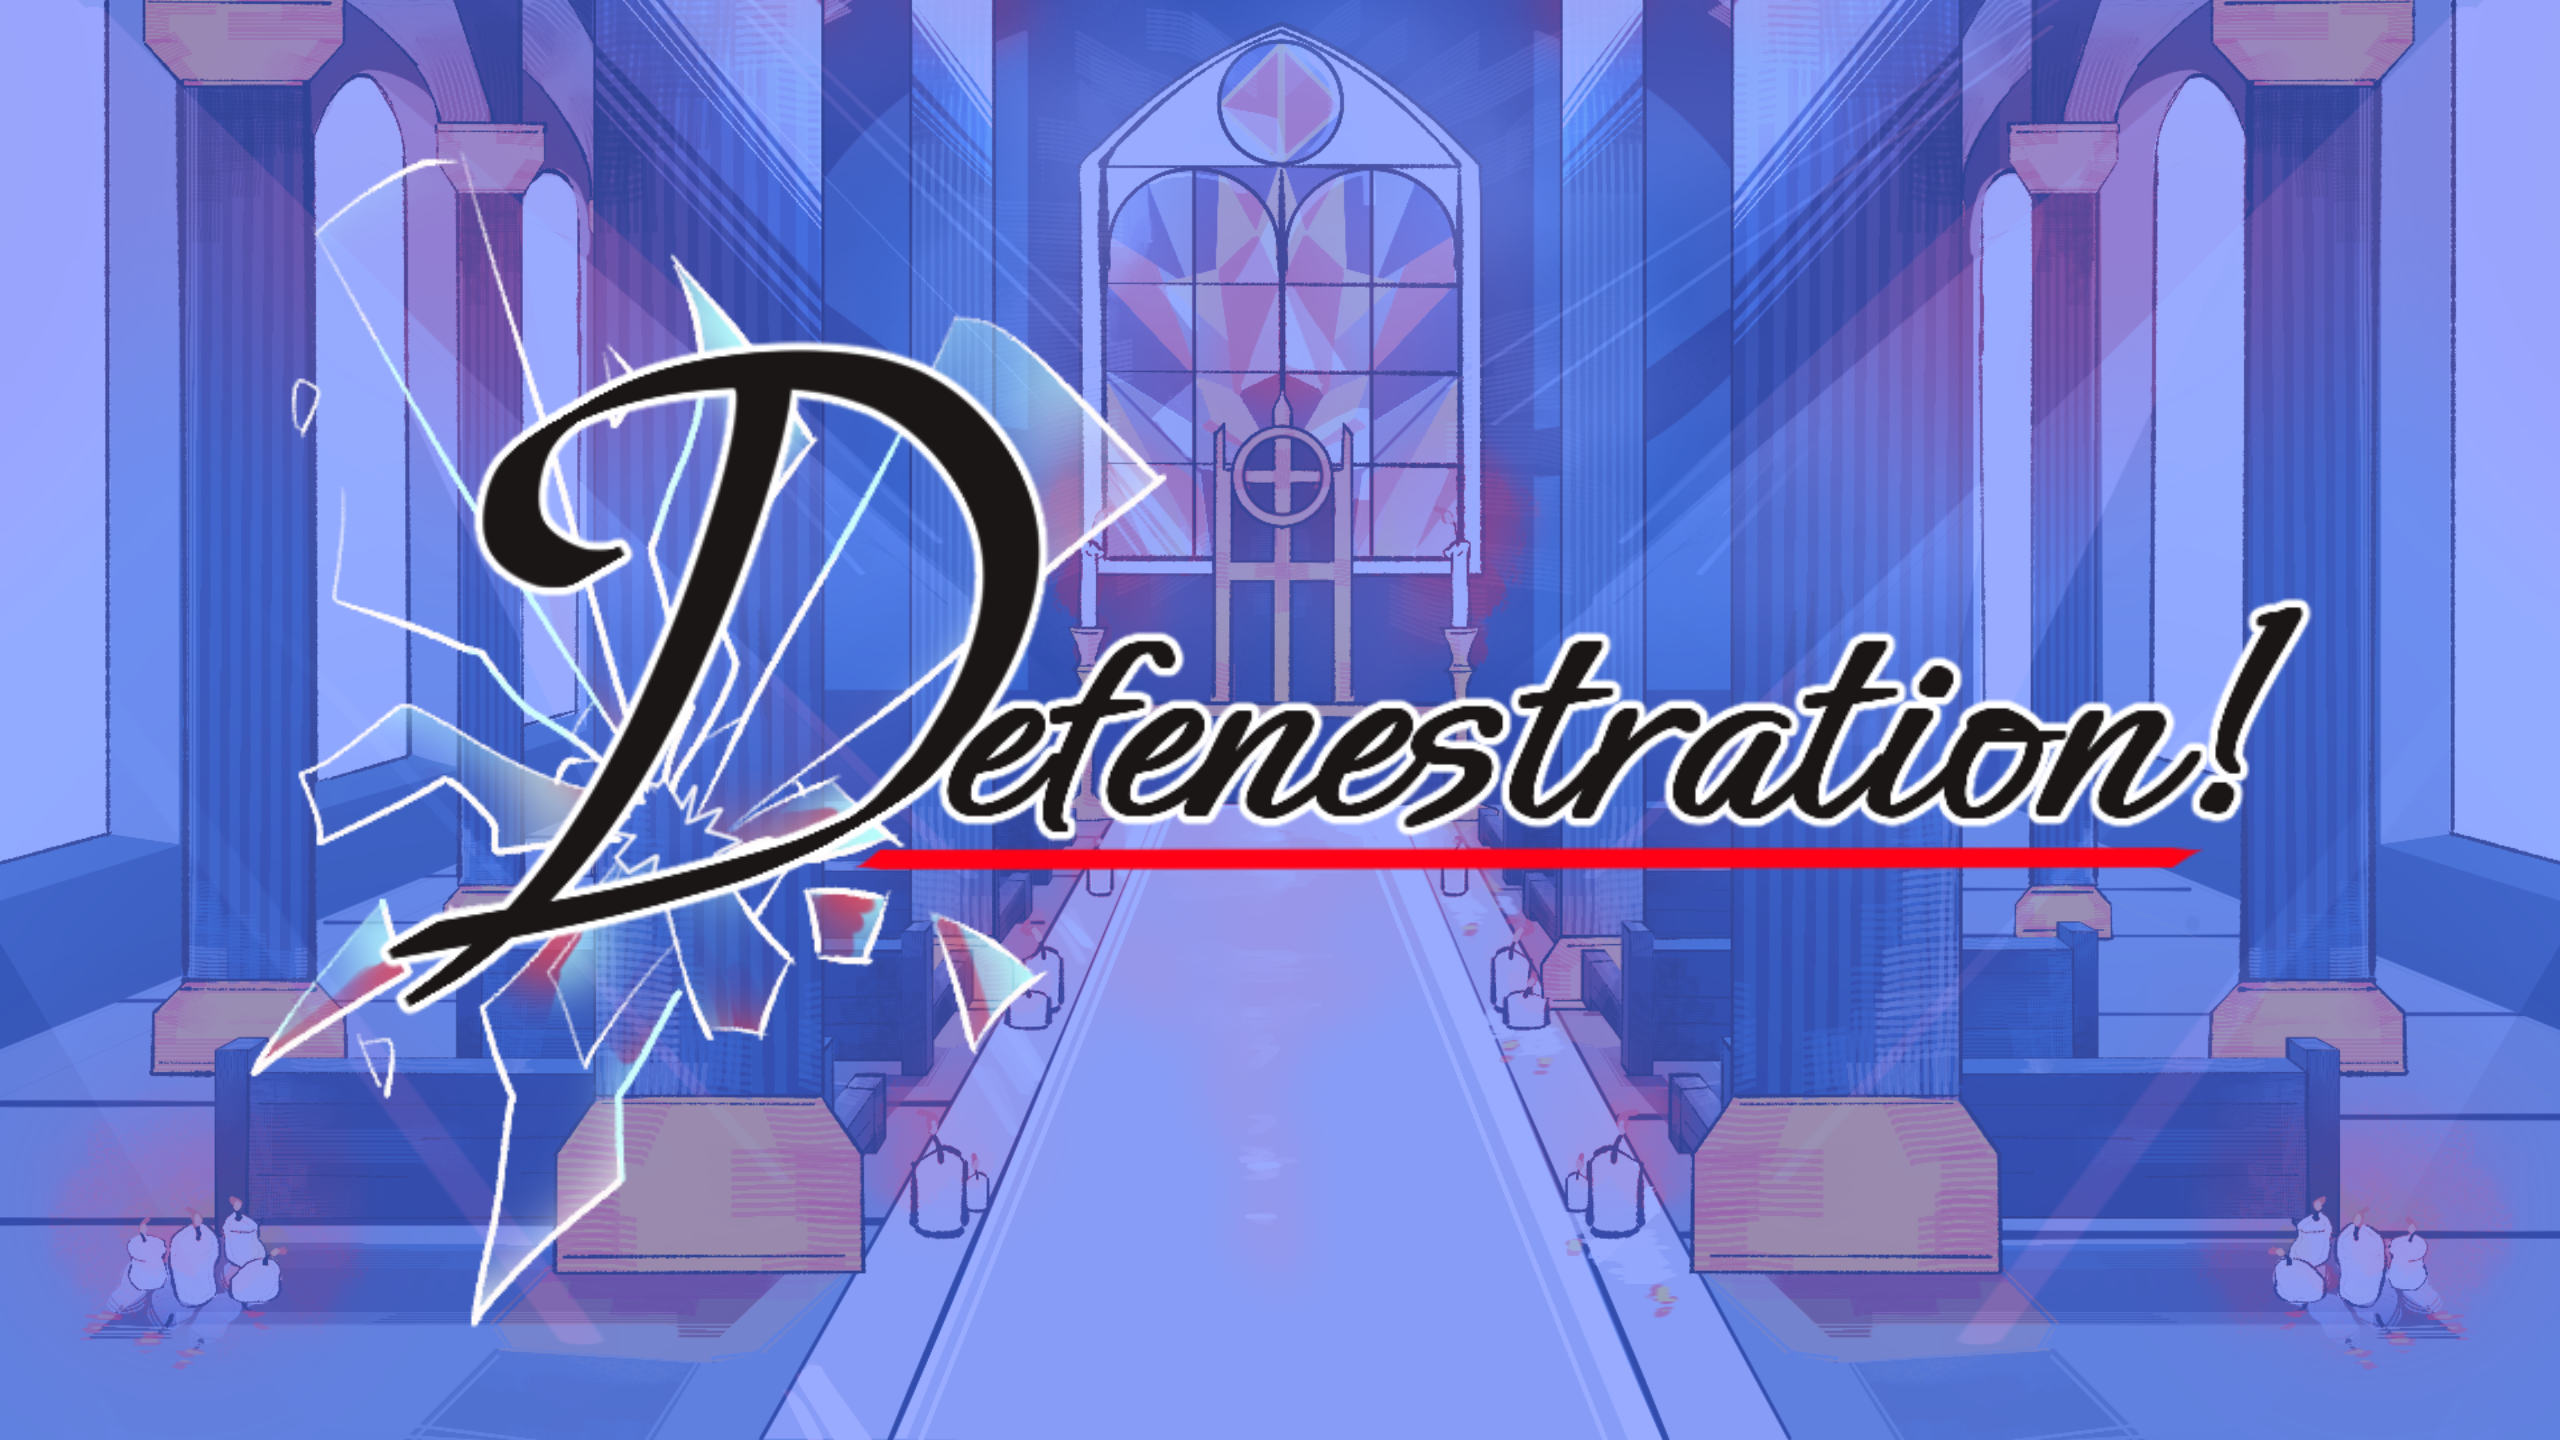 Defenestration! by Luckycrane, tienyil, midrev, Dev Patel, UwUsername,  chuppy, Buppie